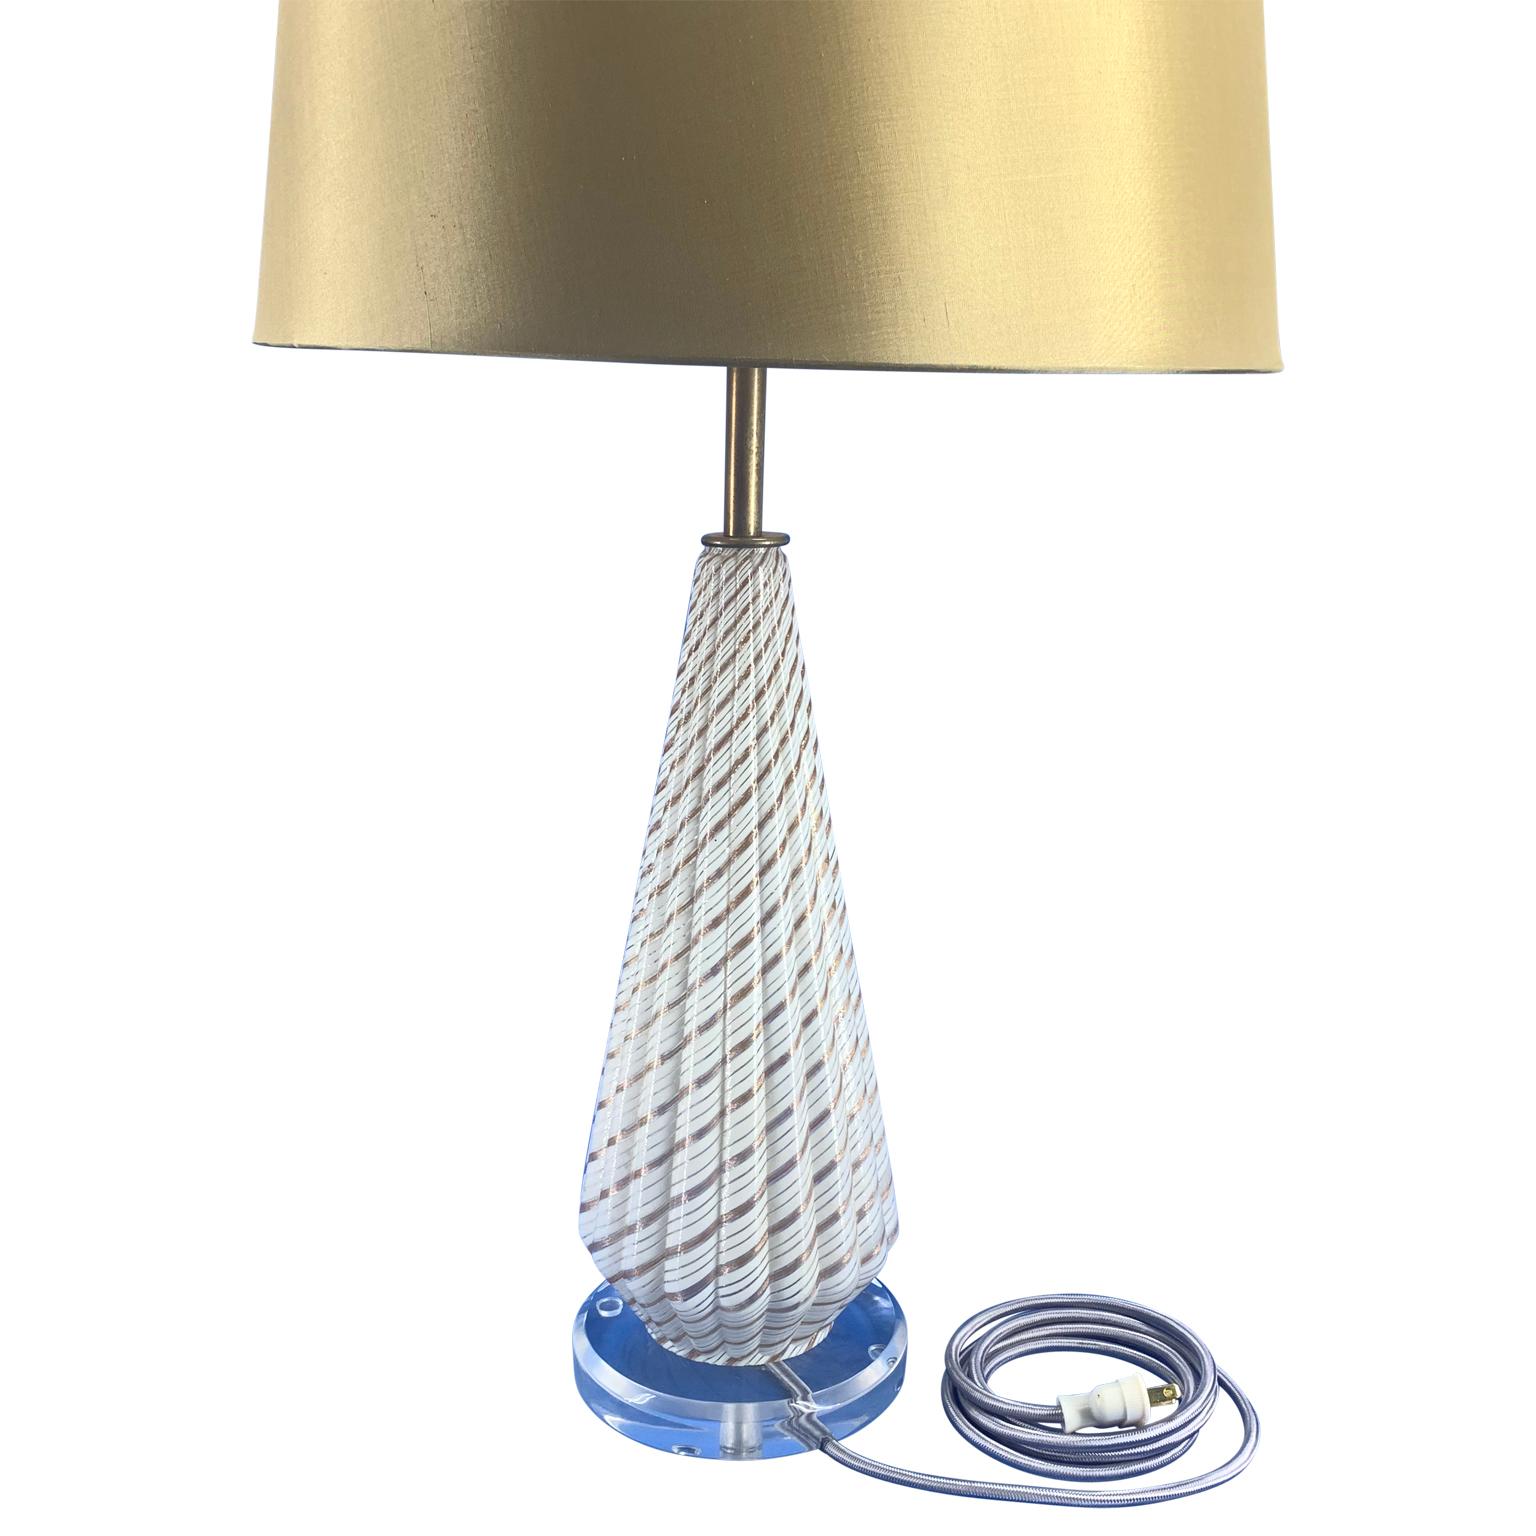 Italienische Tischlampe aus weißem Murano-Kunstglas aus der Jahrhundertmitte auf einem runden, dicken Lucite-Sockel.
Die Lampe wurde neu verkabelt und hat einen Lucite-Finial.